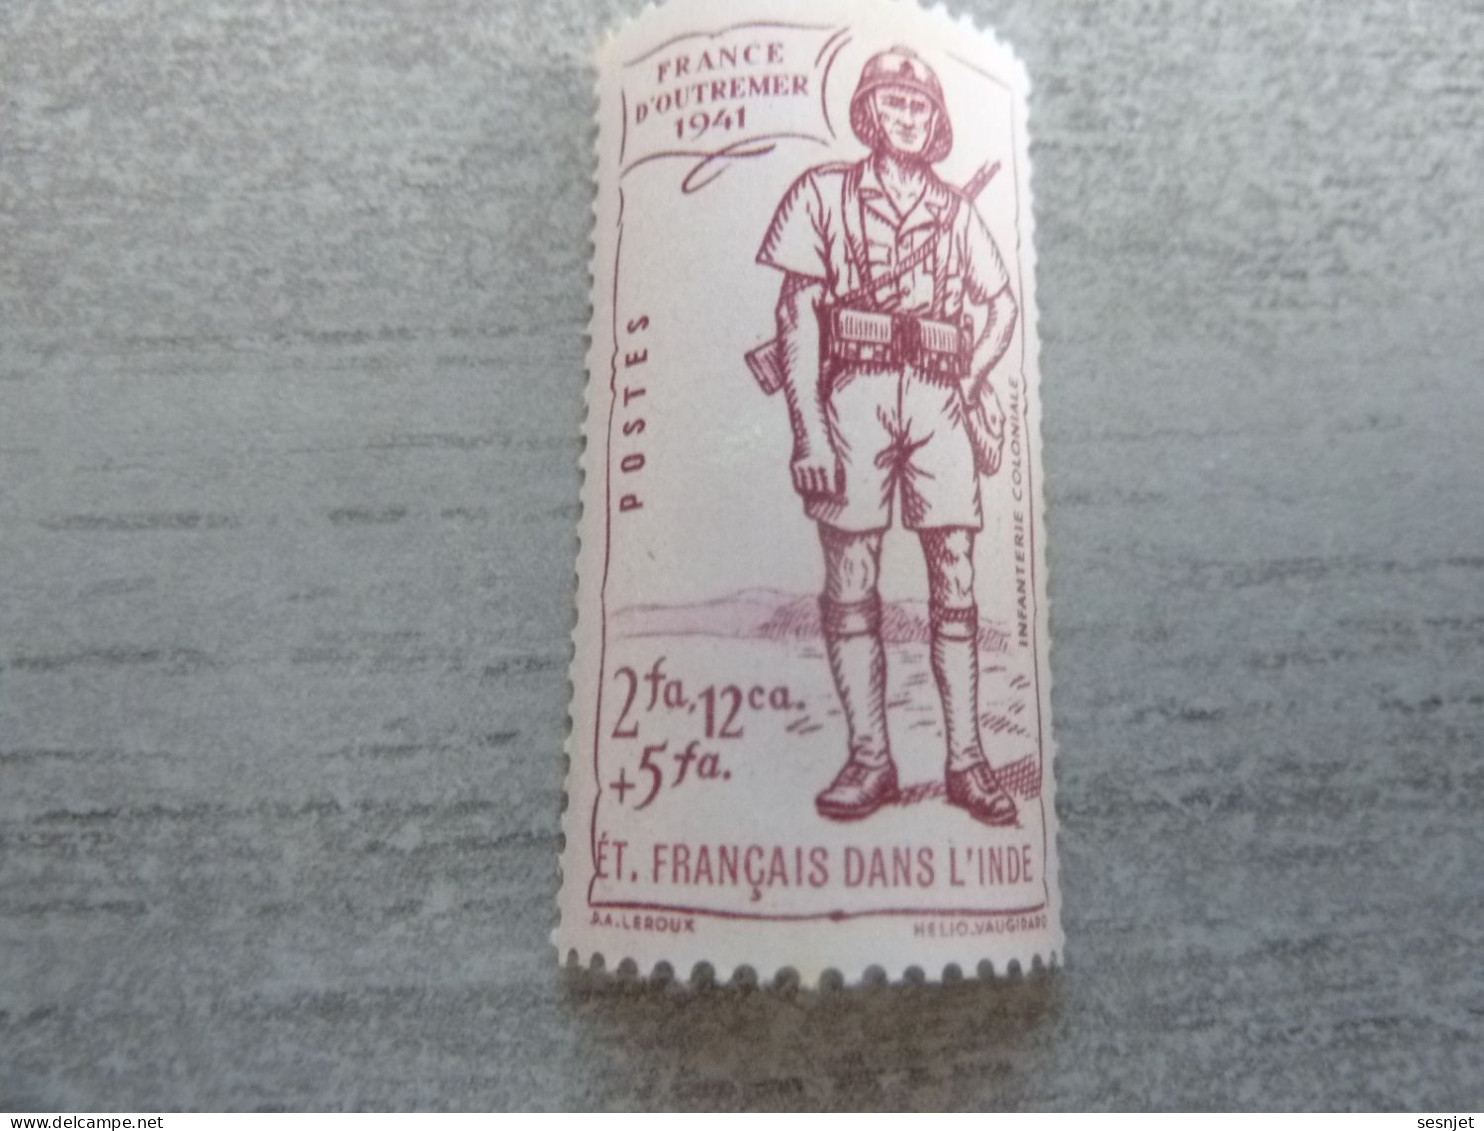 Défense Empire - Infanterie Coloniale - 2fa. 12ca+5fa. - Yt 124 - Lilas - Neuf Sans Trace De Charnière - Année 1941 - - Unused Stamps